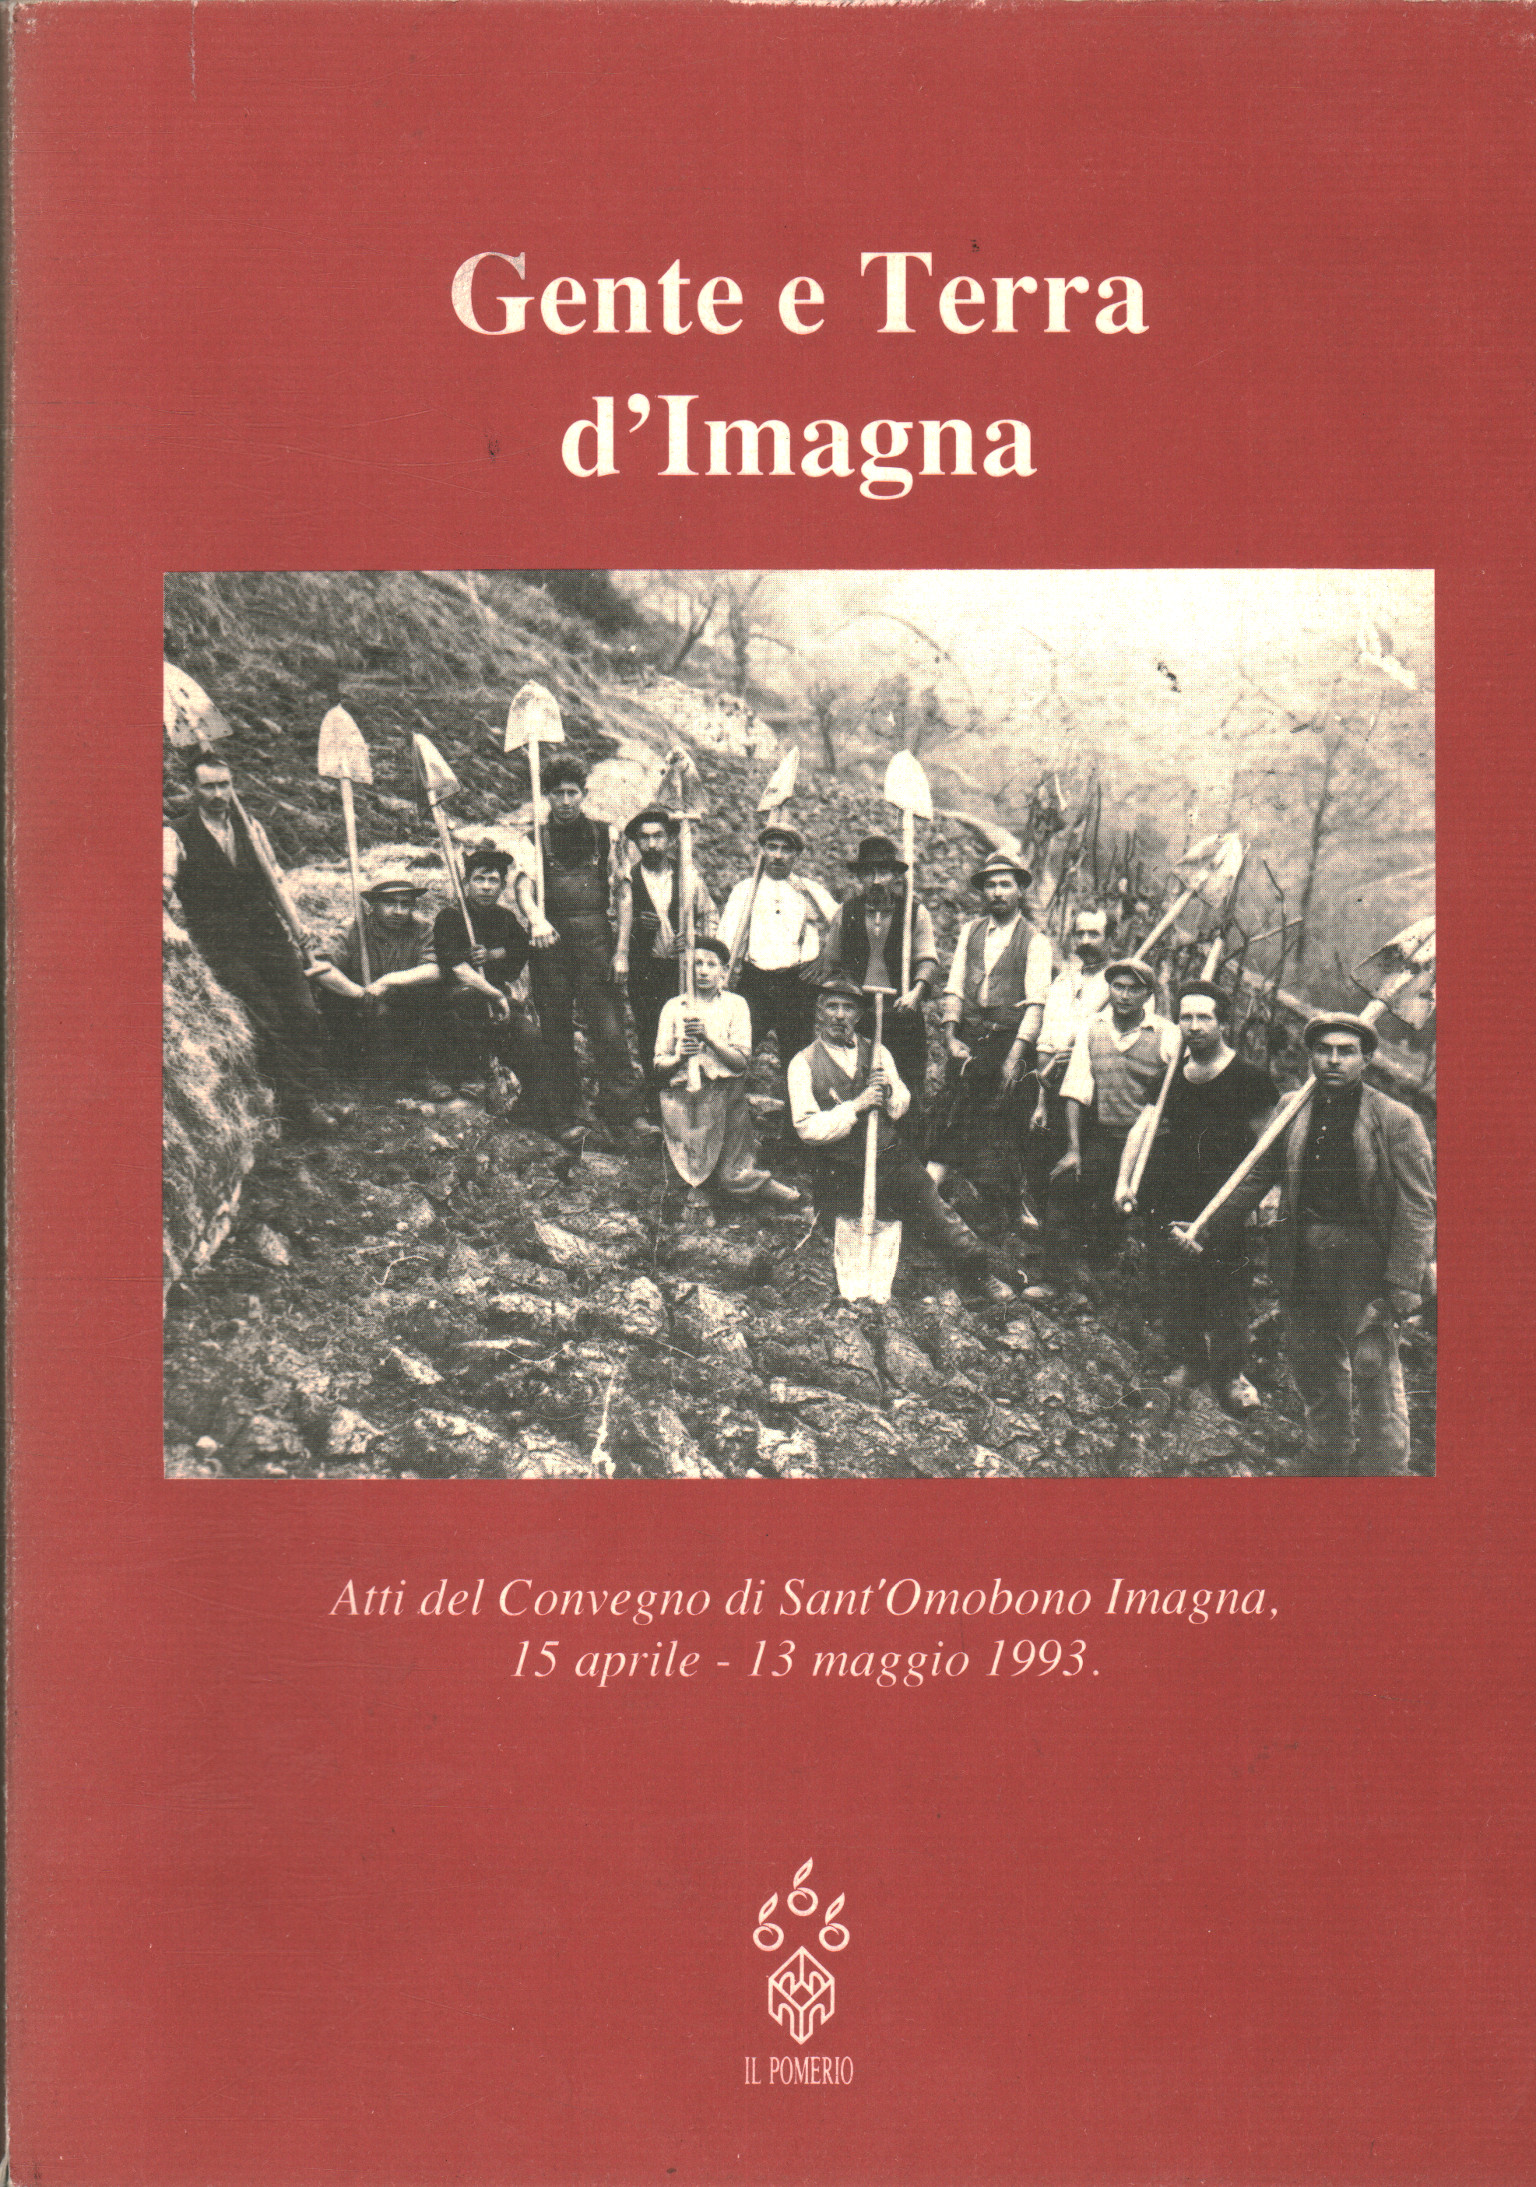 Volk und Land von Imagna, Gianluca Sgalippa Marco Silva